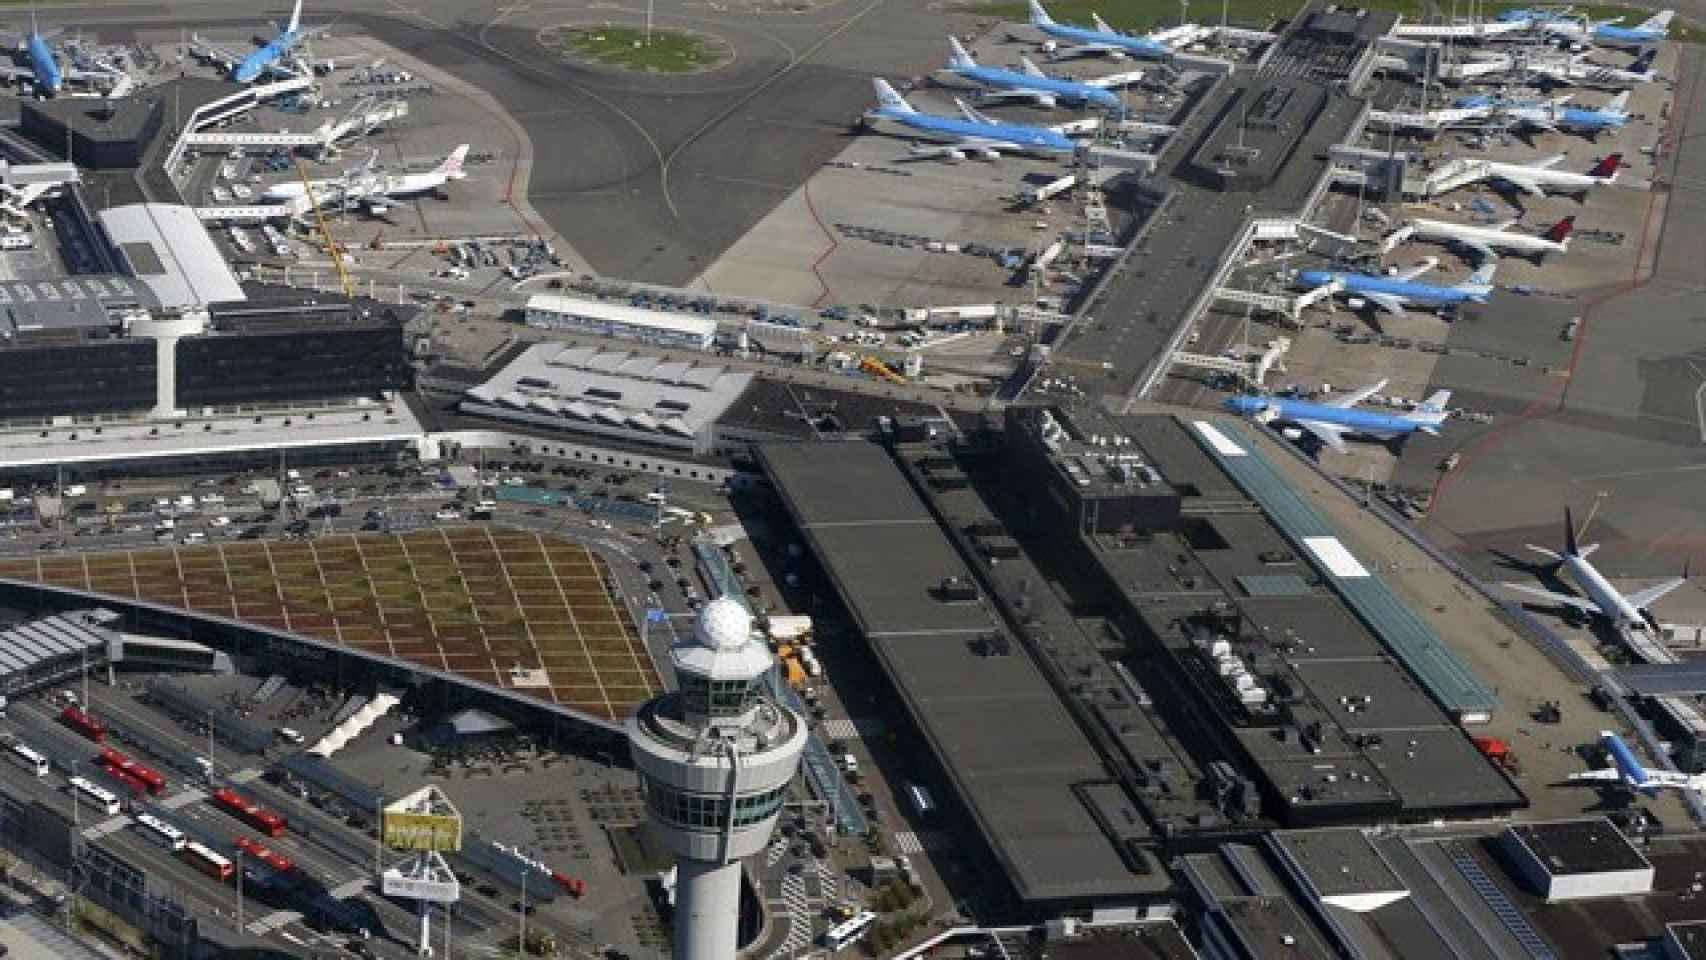 Una imagen del aeropuerto de Ámsterdam.